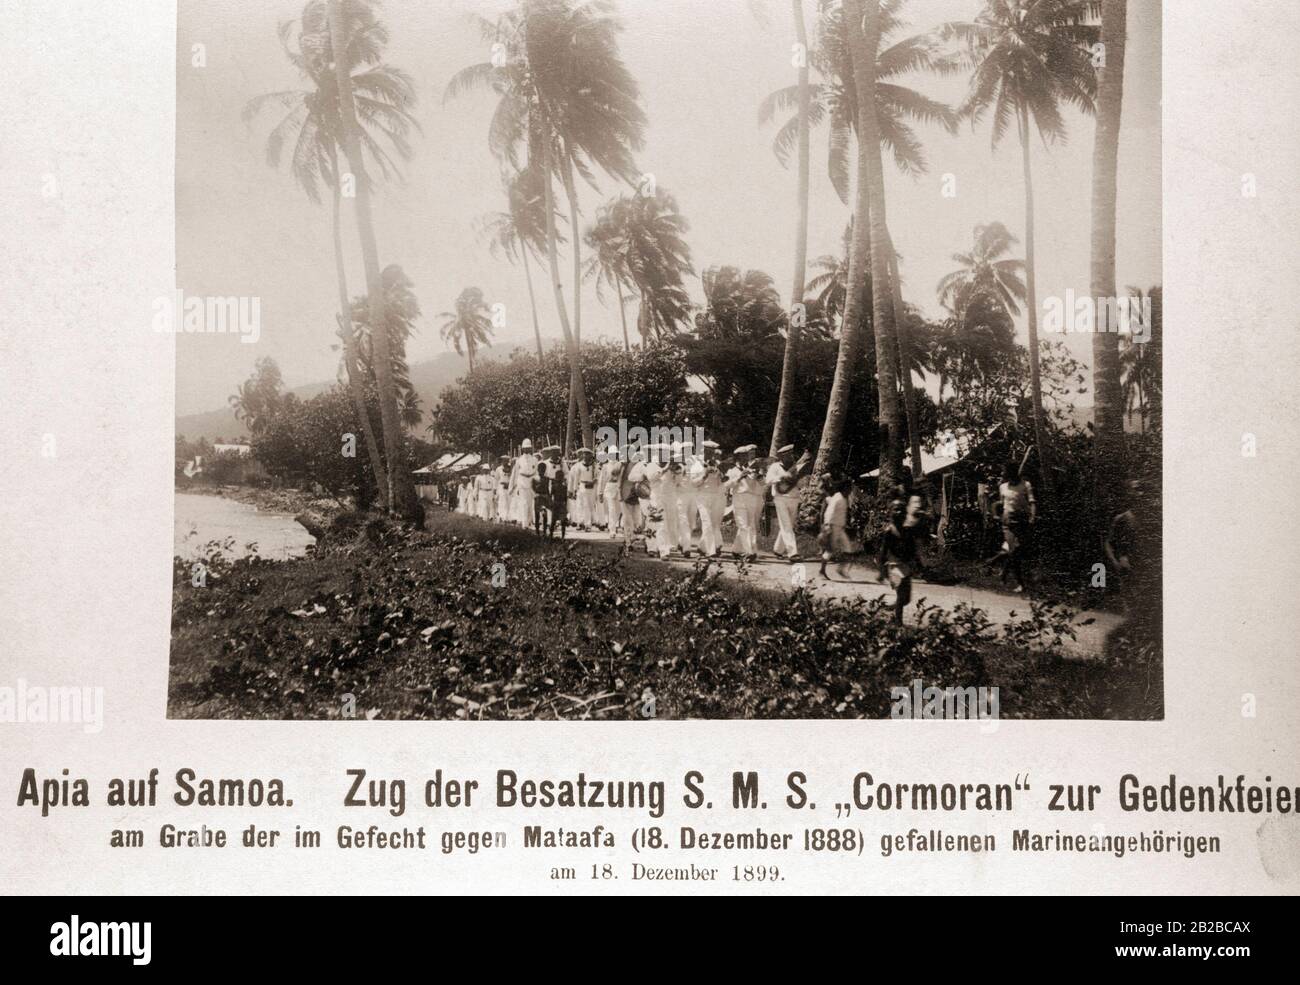 Processione dell'equipaggio di S.M.S. Cormoran alla cerimonia di commemorazione presso la tomba dei membri della marina che morì nella battaglia contro il capo e capo degli abitanti di Samoa il 18.12.1888 ad Apia su Samoa. Foto Stock